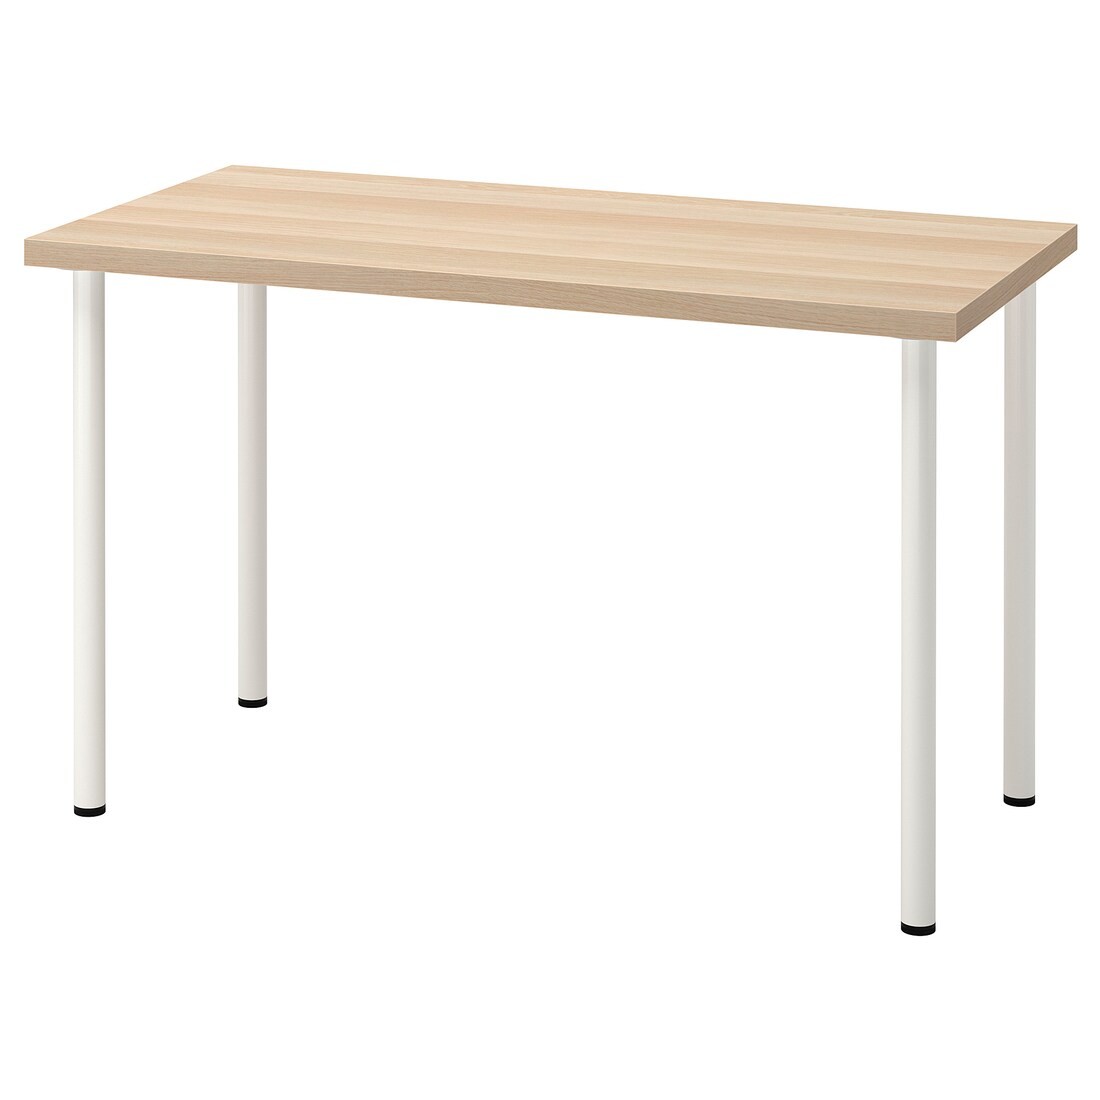 IKEA LAGKAPTEN ЛАГКАПТЕН / ADILS АДИЛЬС Письменный стол, под беленый дуб / белый, 120x60 см 79416874 794.168.74